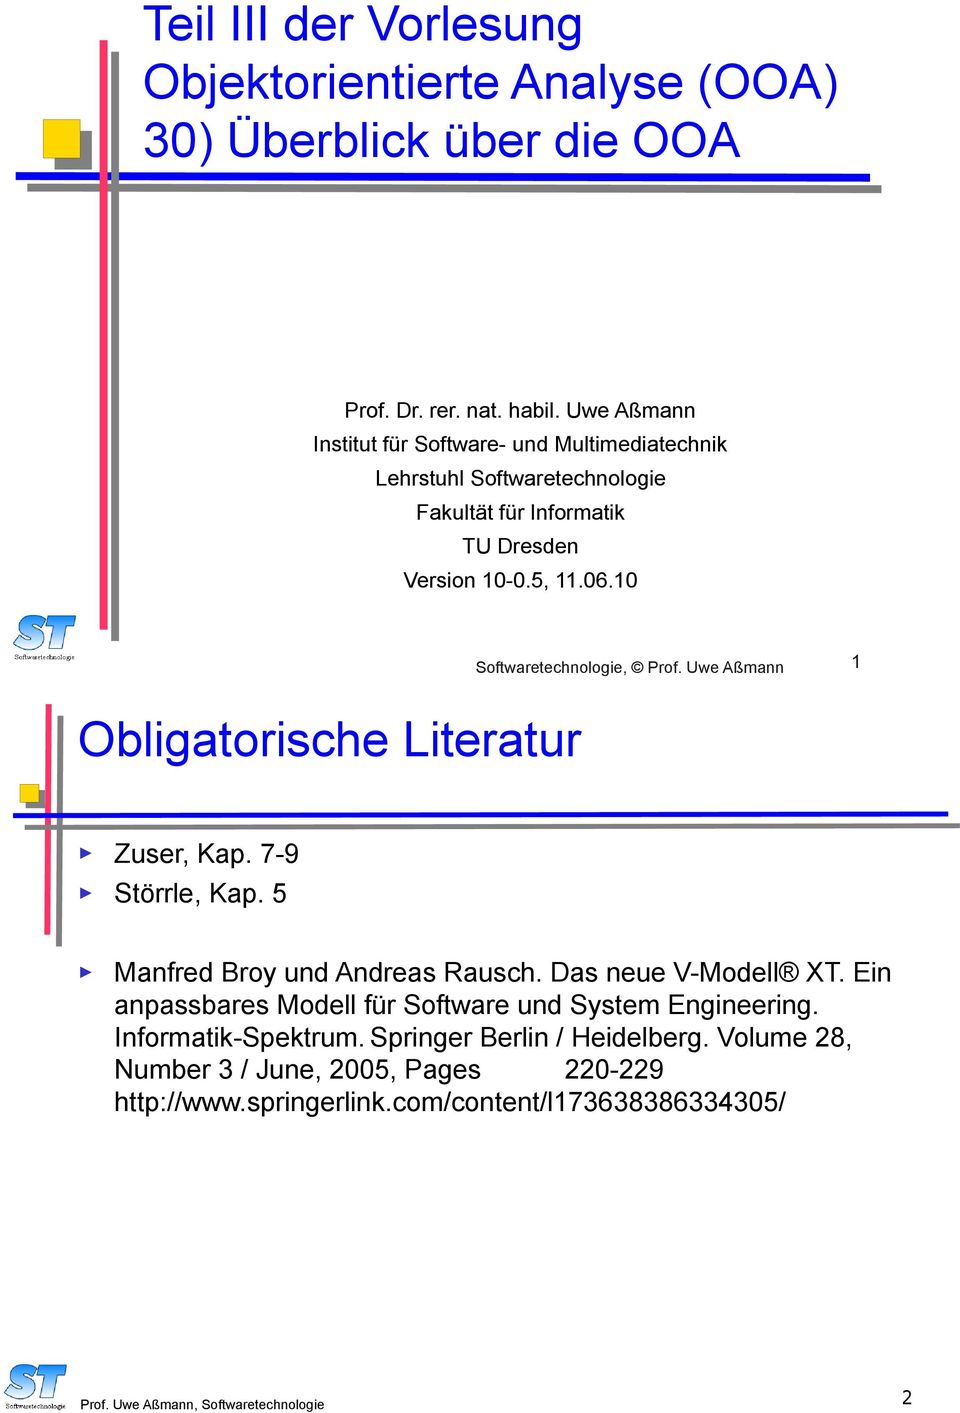 10 Softwaretechnologie, Prof. Uwe Aßmann 1 Obligatorische Literatur Zuser, Kap. 7-9 Störrle, Kap. 5 Manfred Broy und Andreas Rausch. Das neue V-Modell XT.